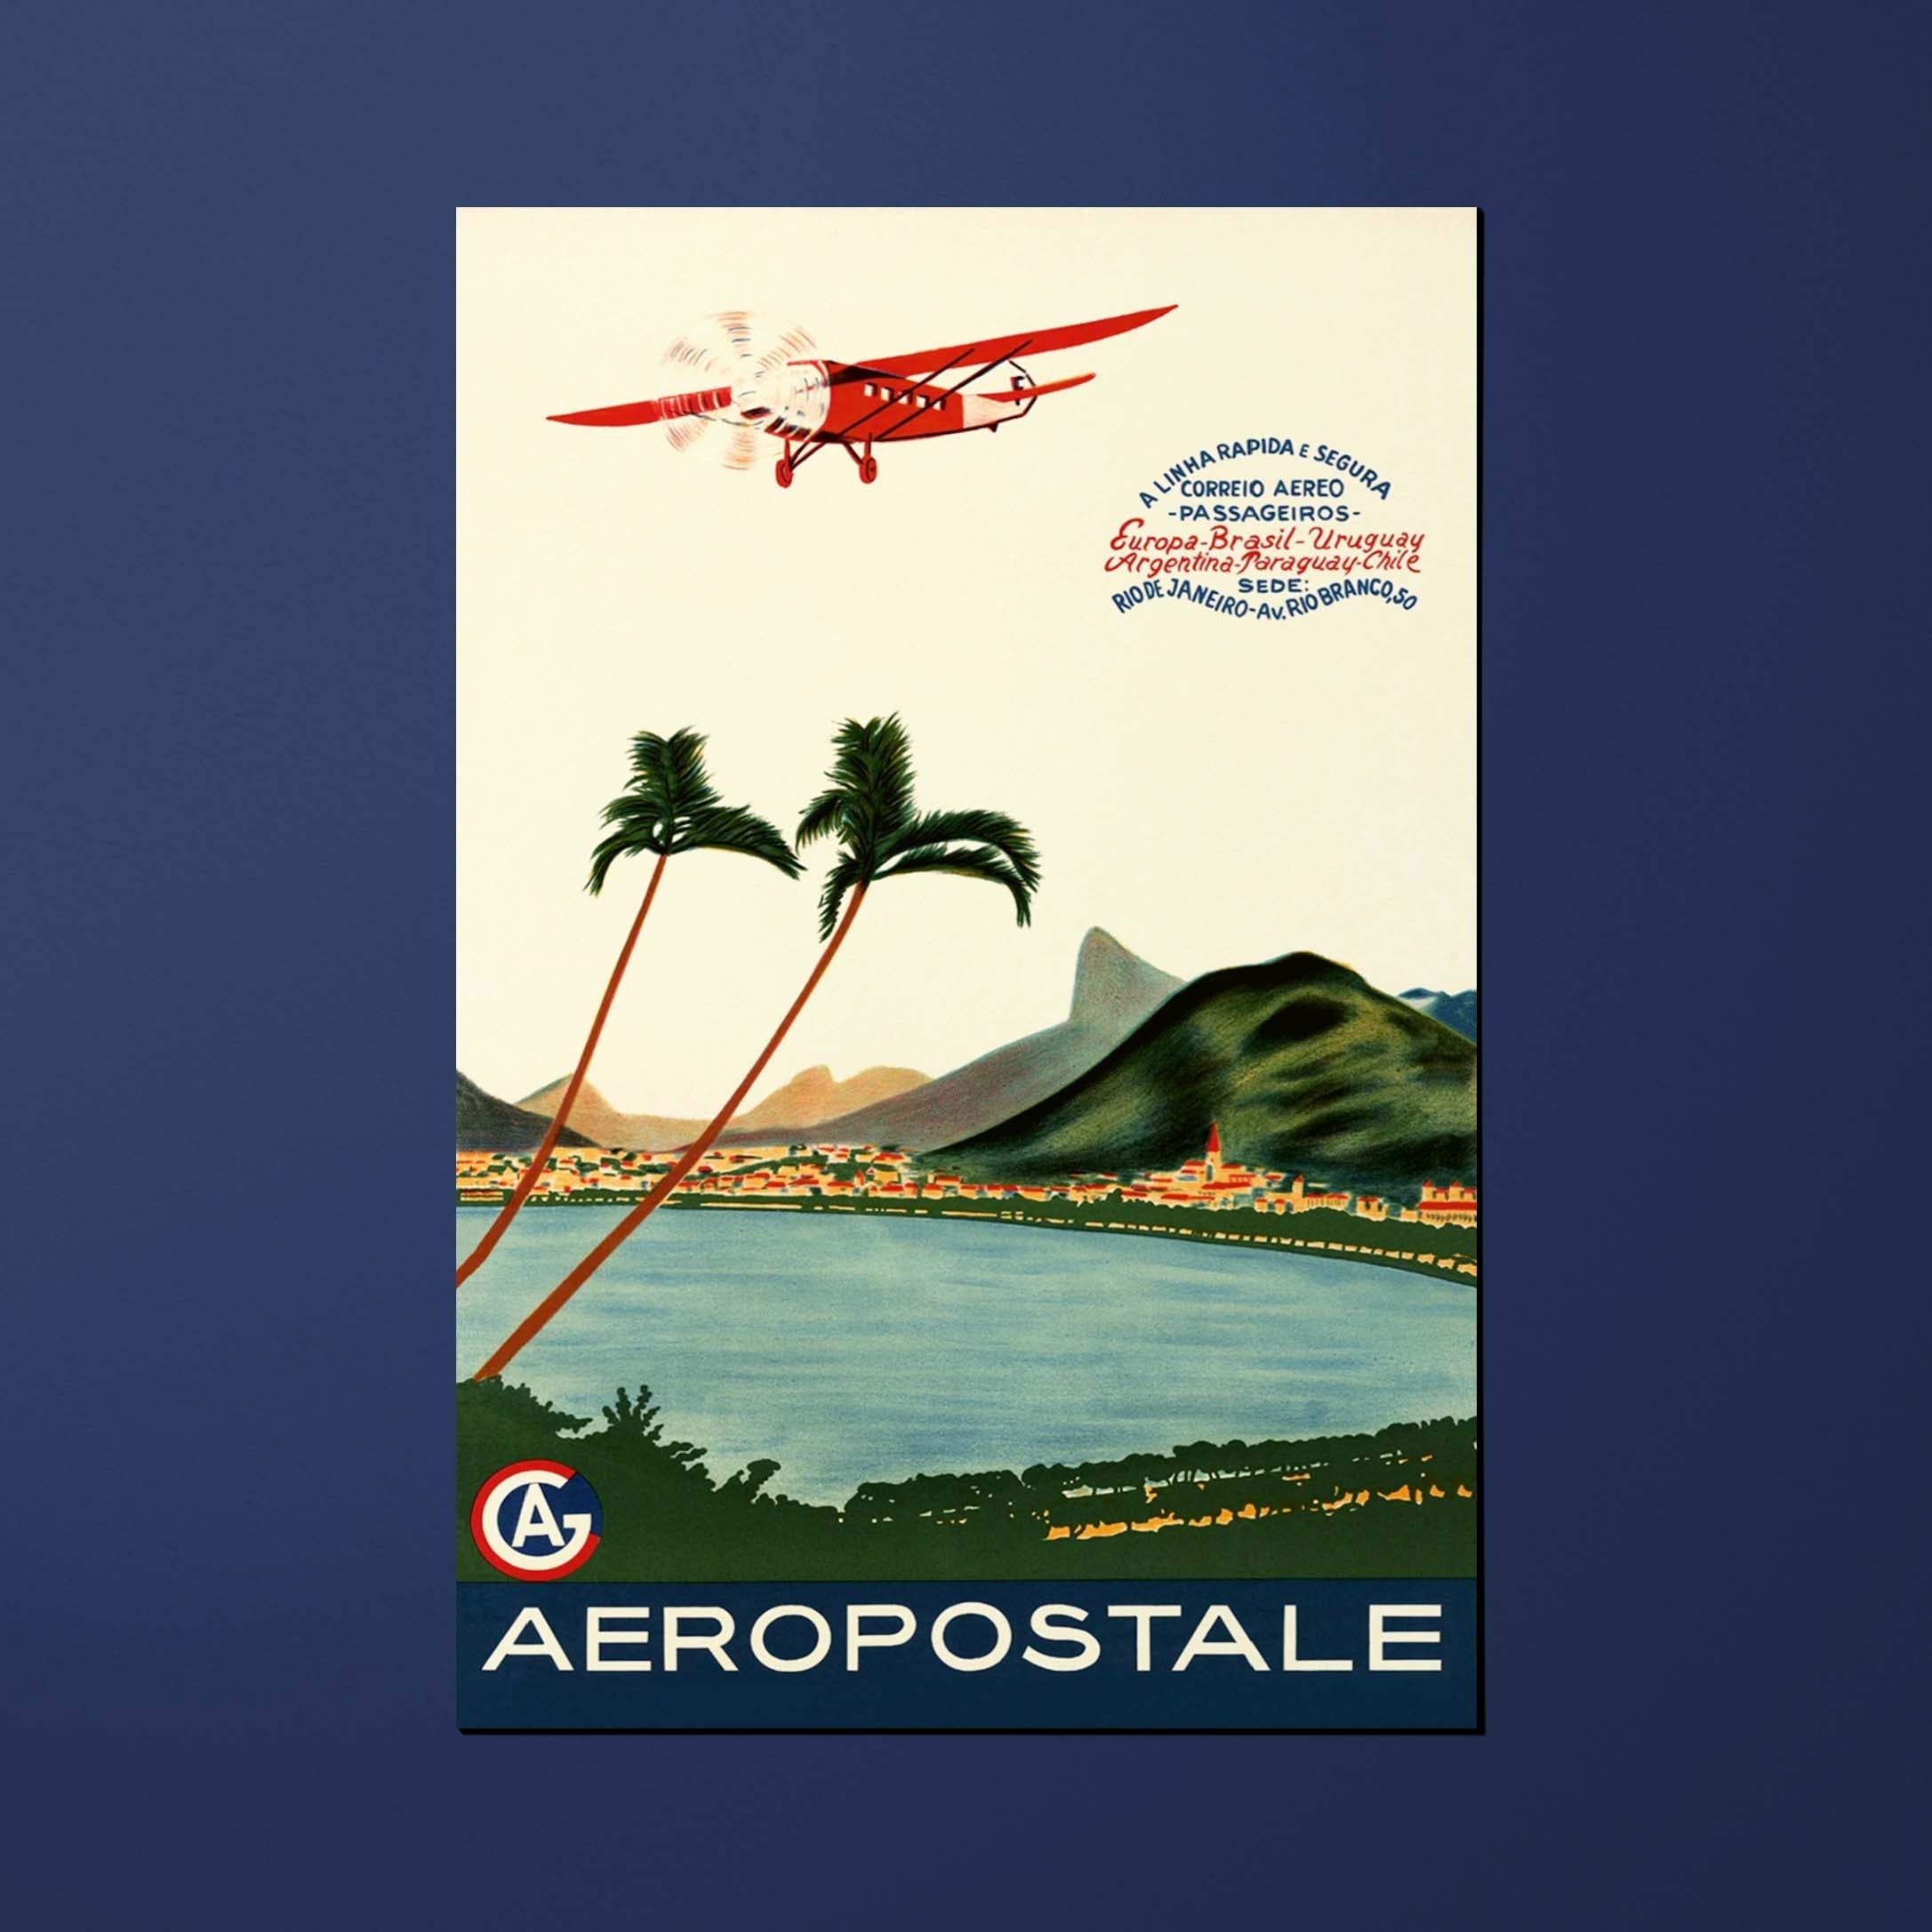 Carte postale Air France Legend Aéropostale A linha rapida e segura